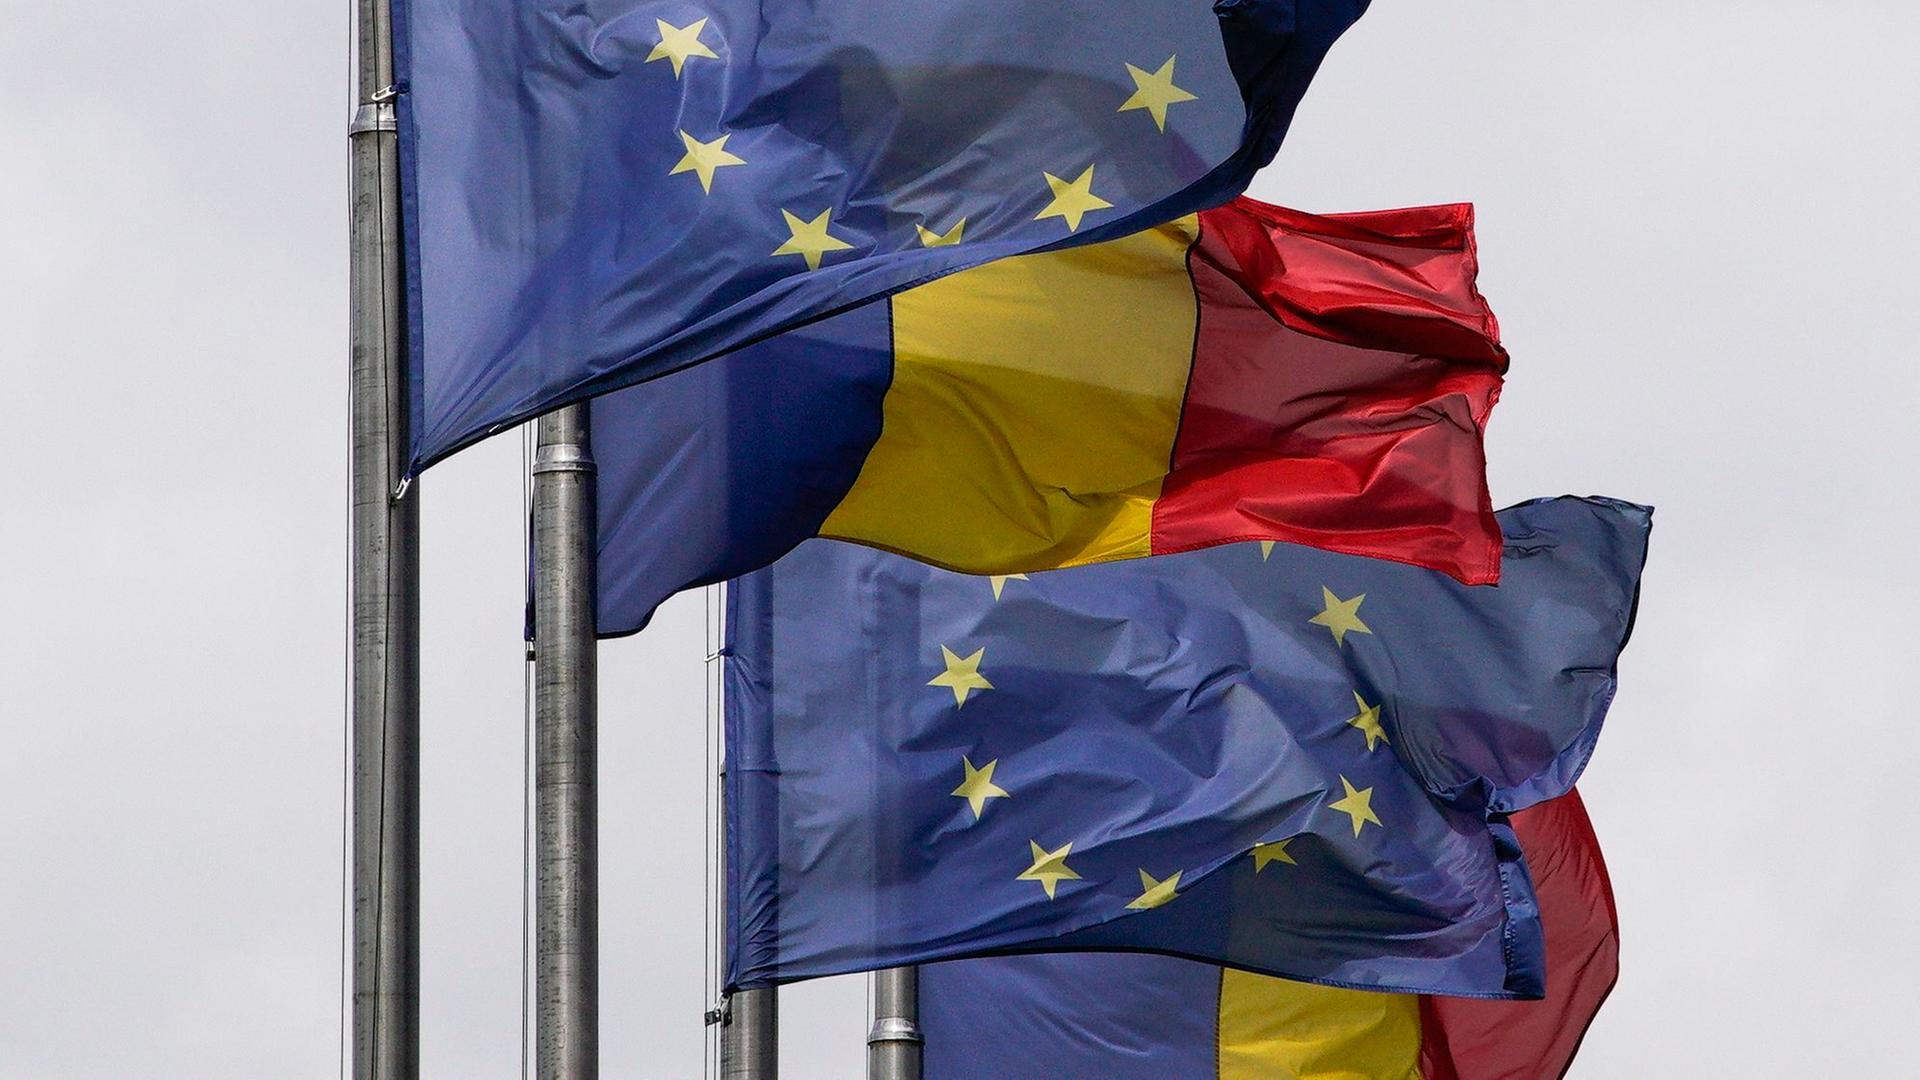 Flaggen Rumäniens und der Europäischen Union flattern am Victoria Palast in Rumäniens Hauptstadt Bukarest